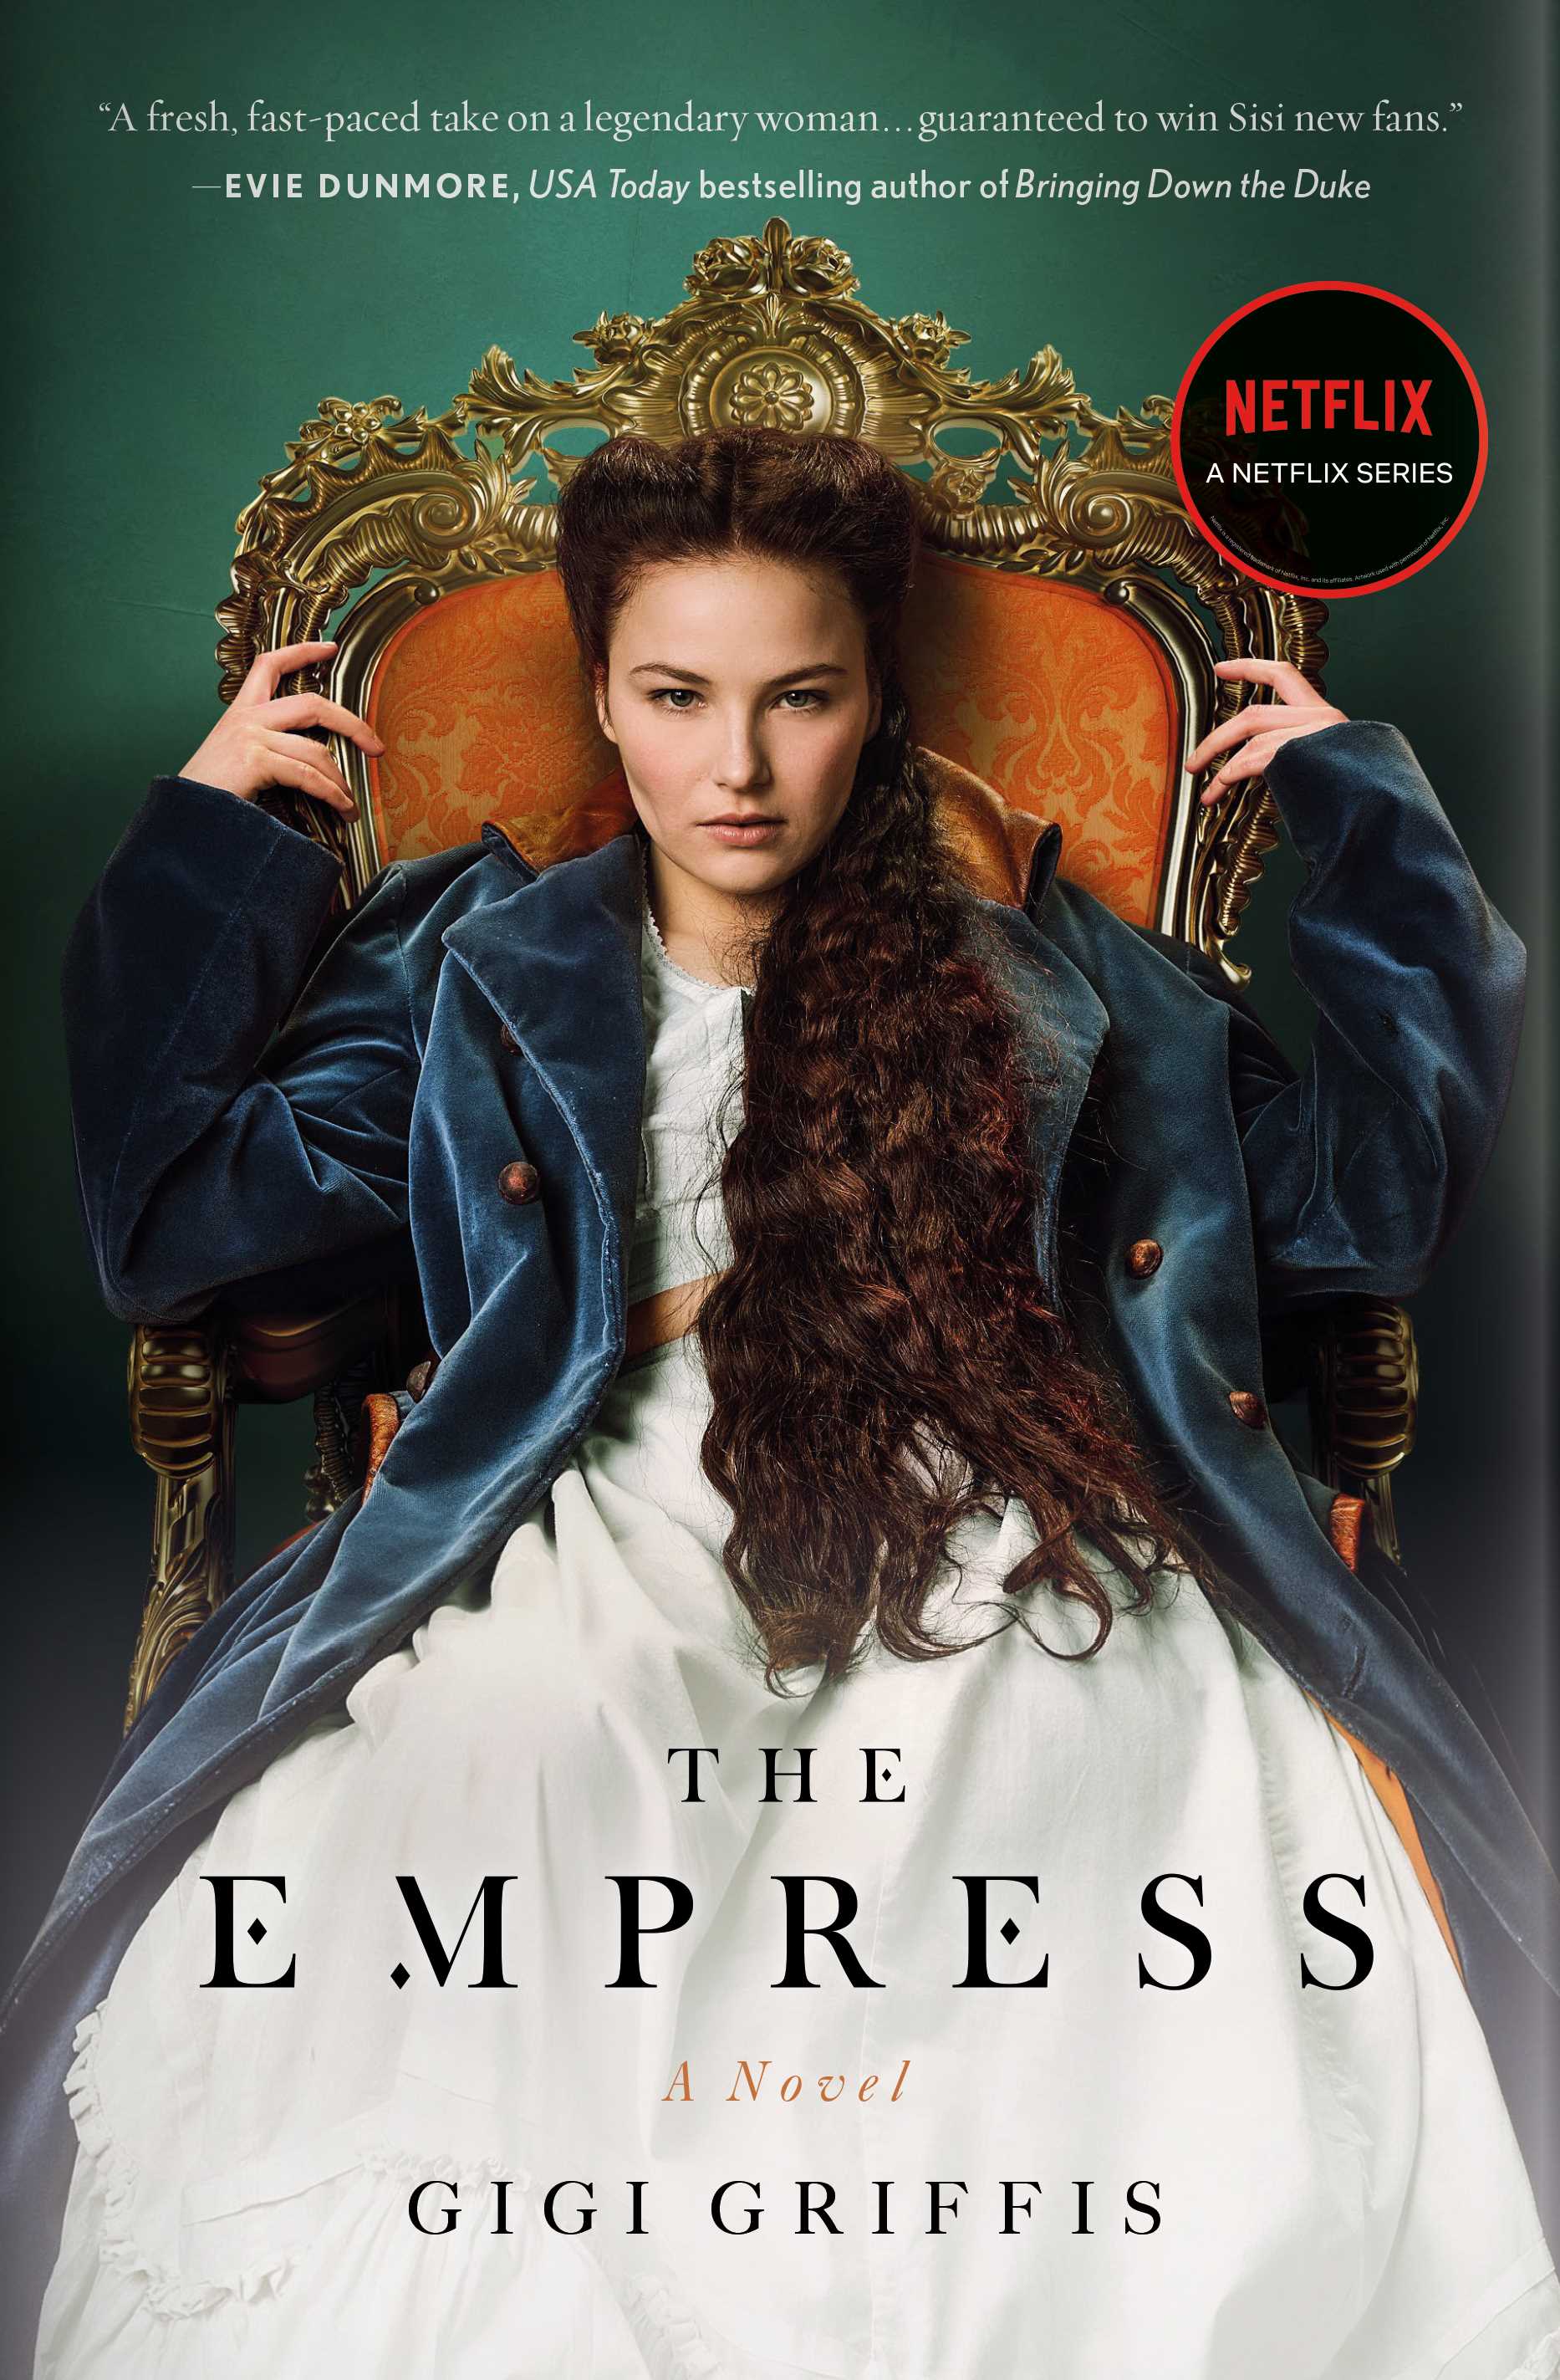 The Empress (TV Tie-in)